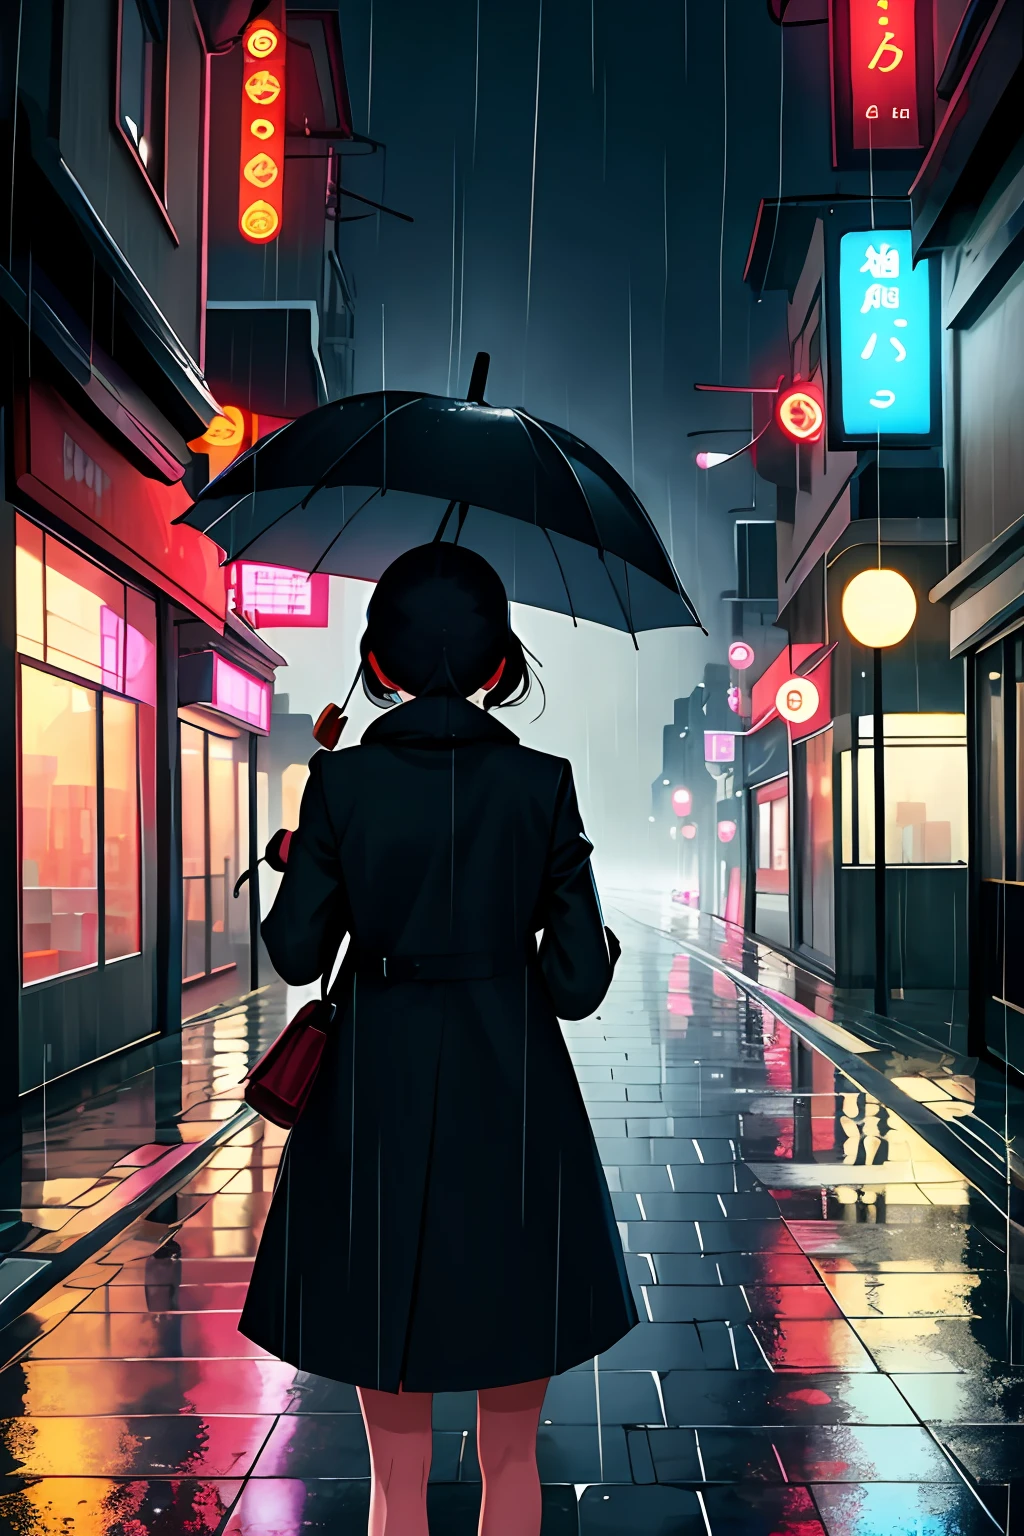 傑作,最高品質,1人の女の子, 市,風景,雨,傘,背後から